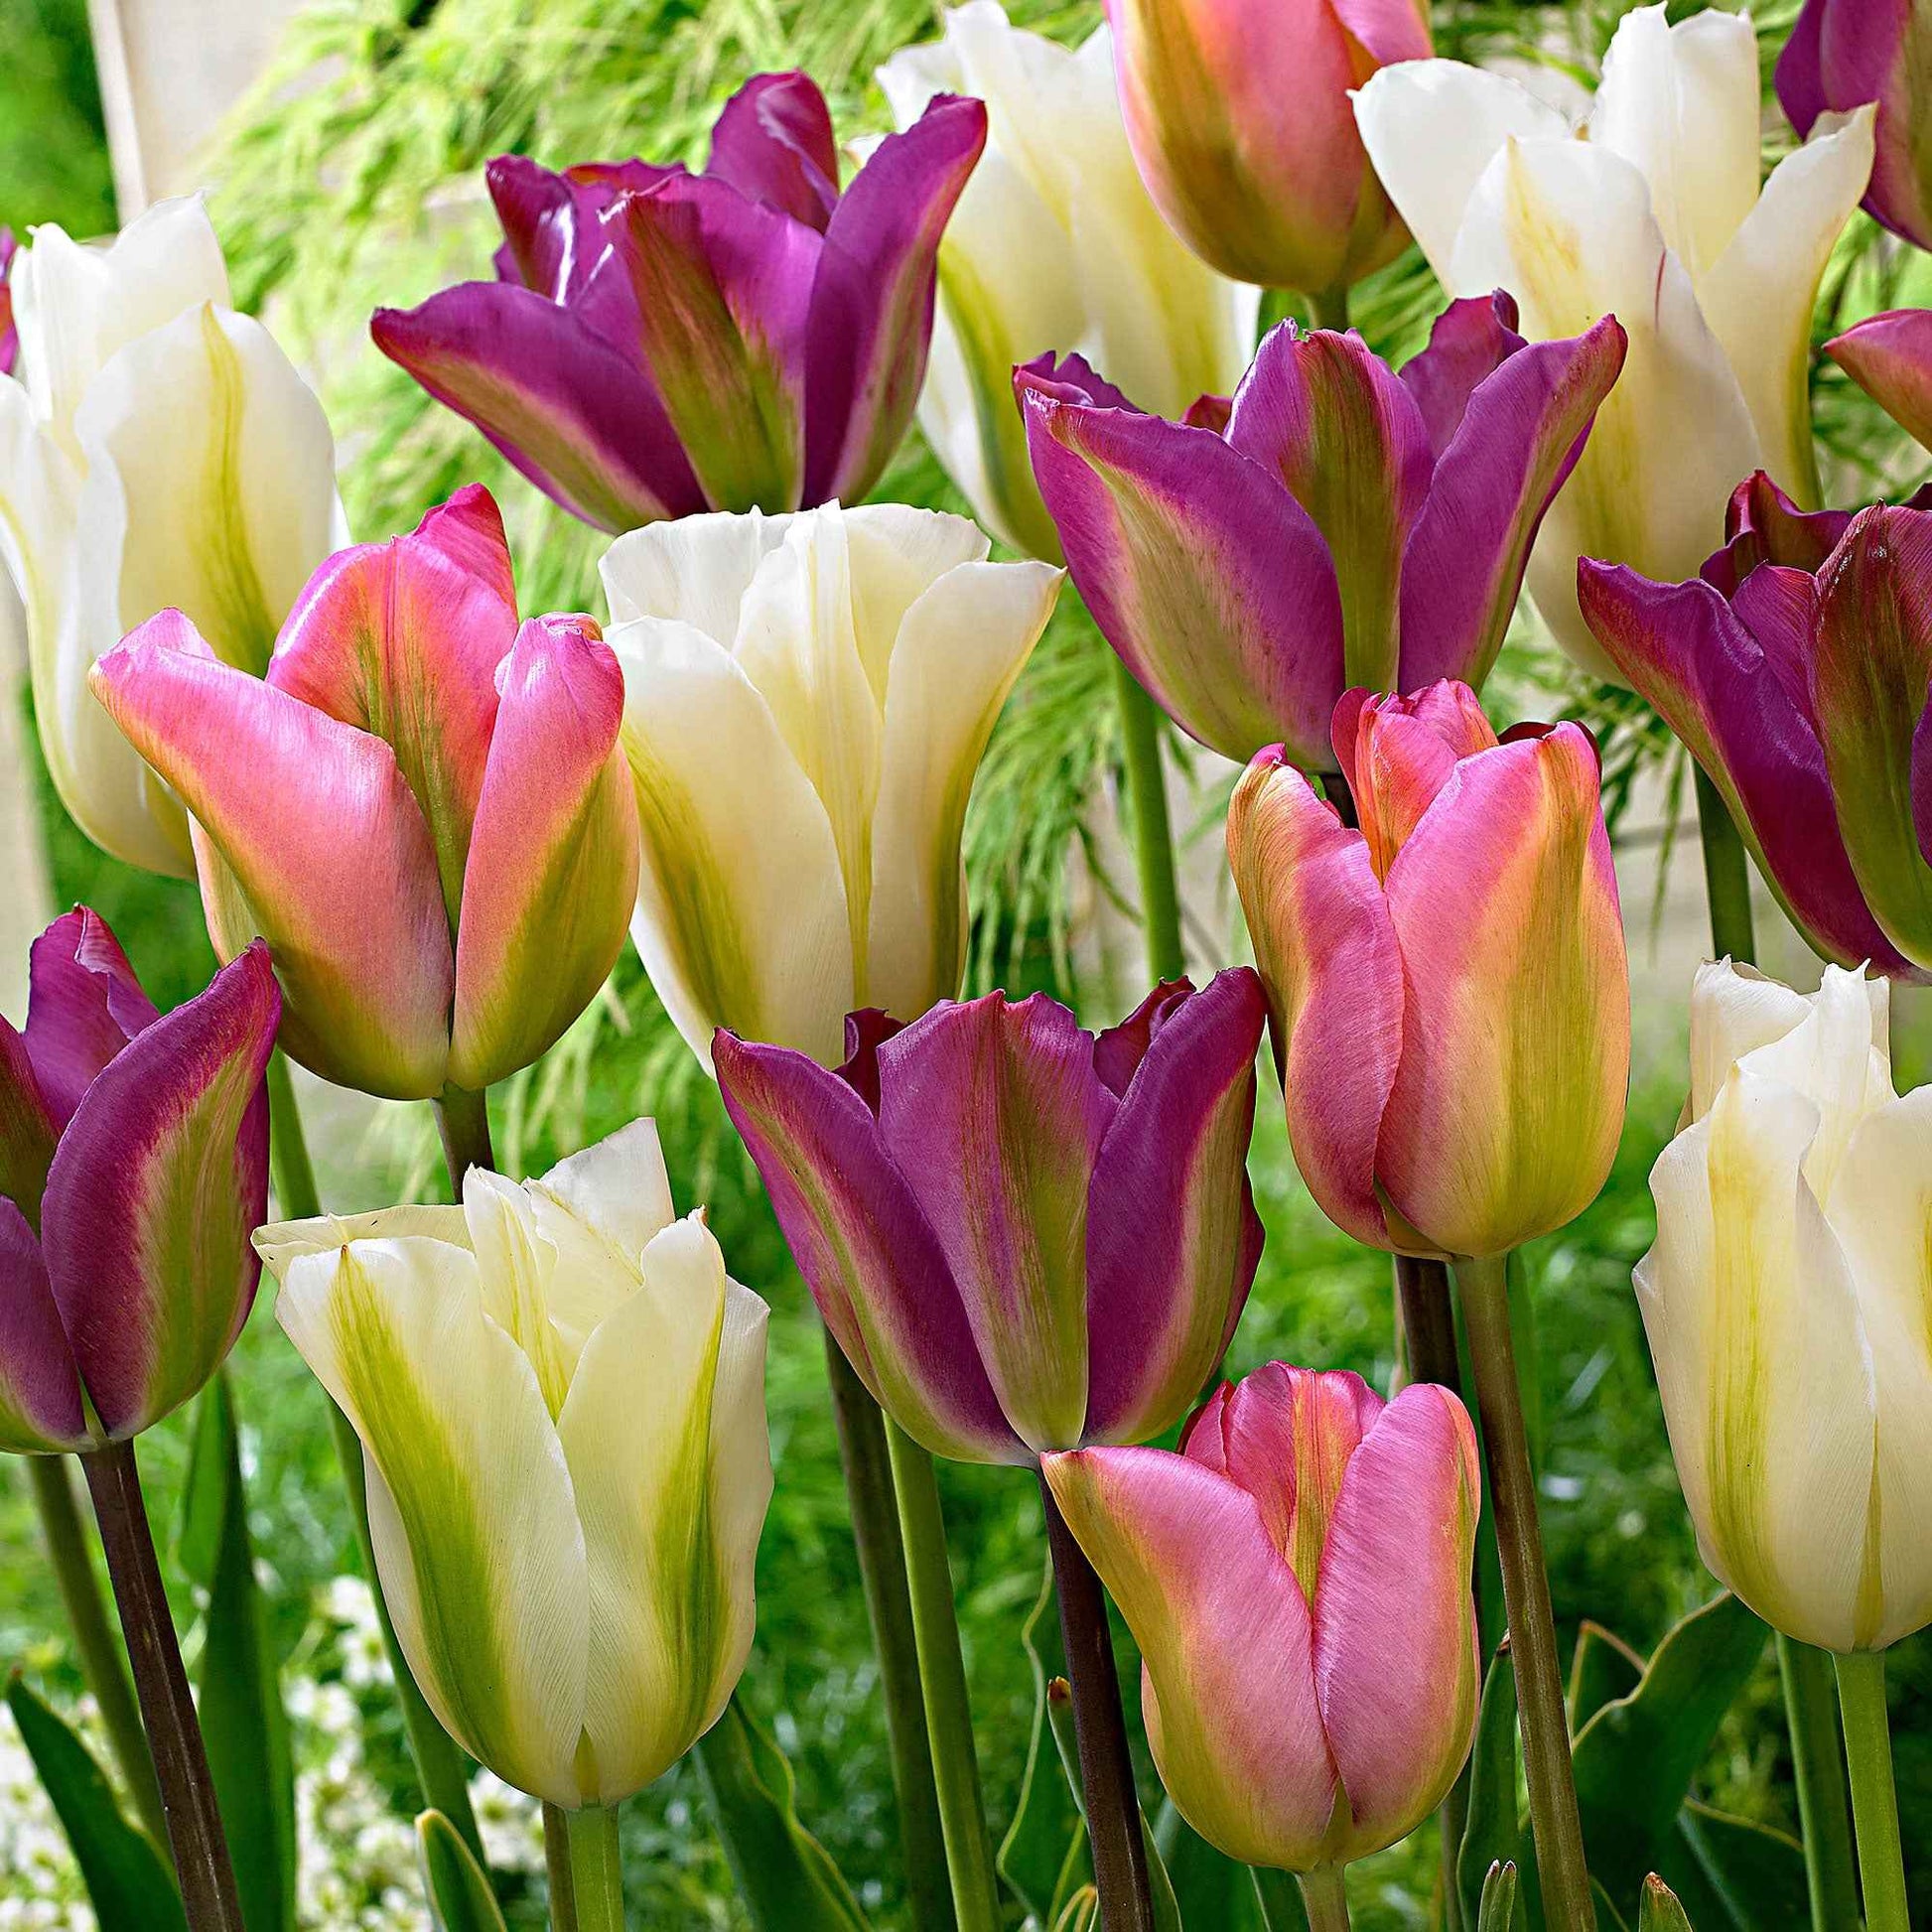 20x Tulipes Tulipa - Mélange 'Greenland' rose-violet-blanc - Bulbes de fleurs populaires